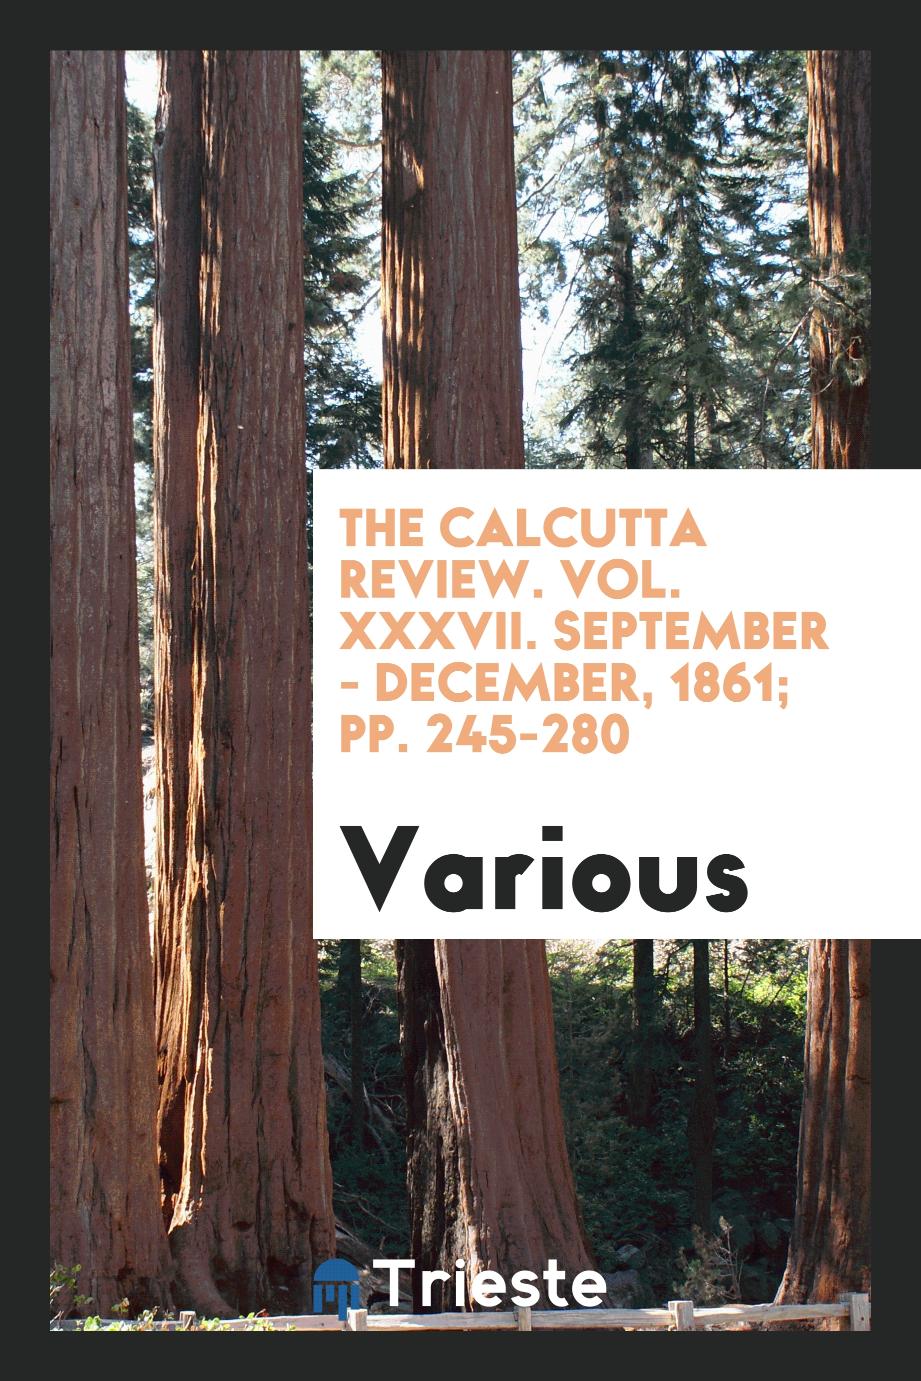 The Calcutta Review. Vol. XXXVII. September - December, 1861; pp. 245-280